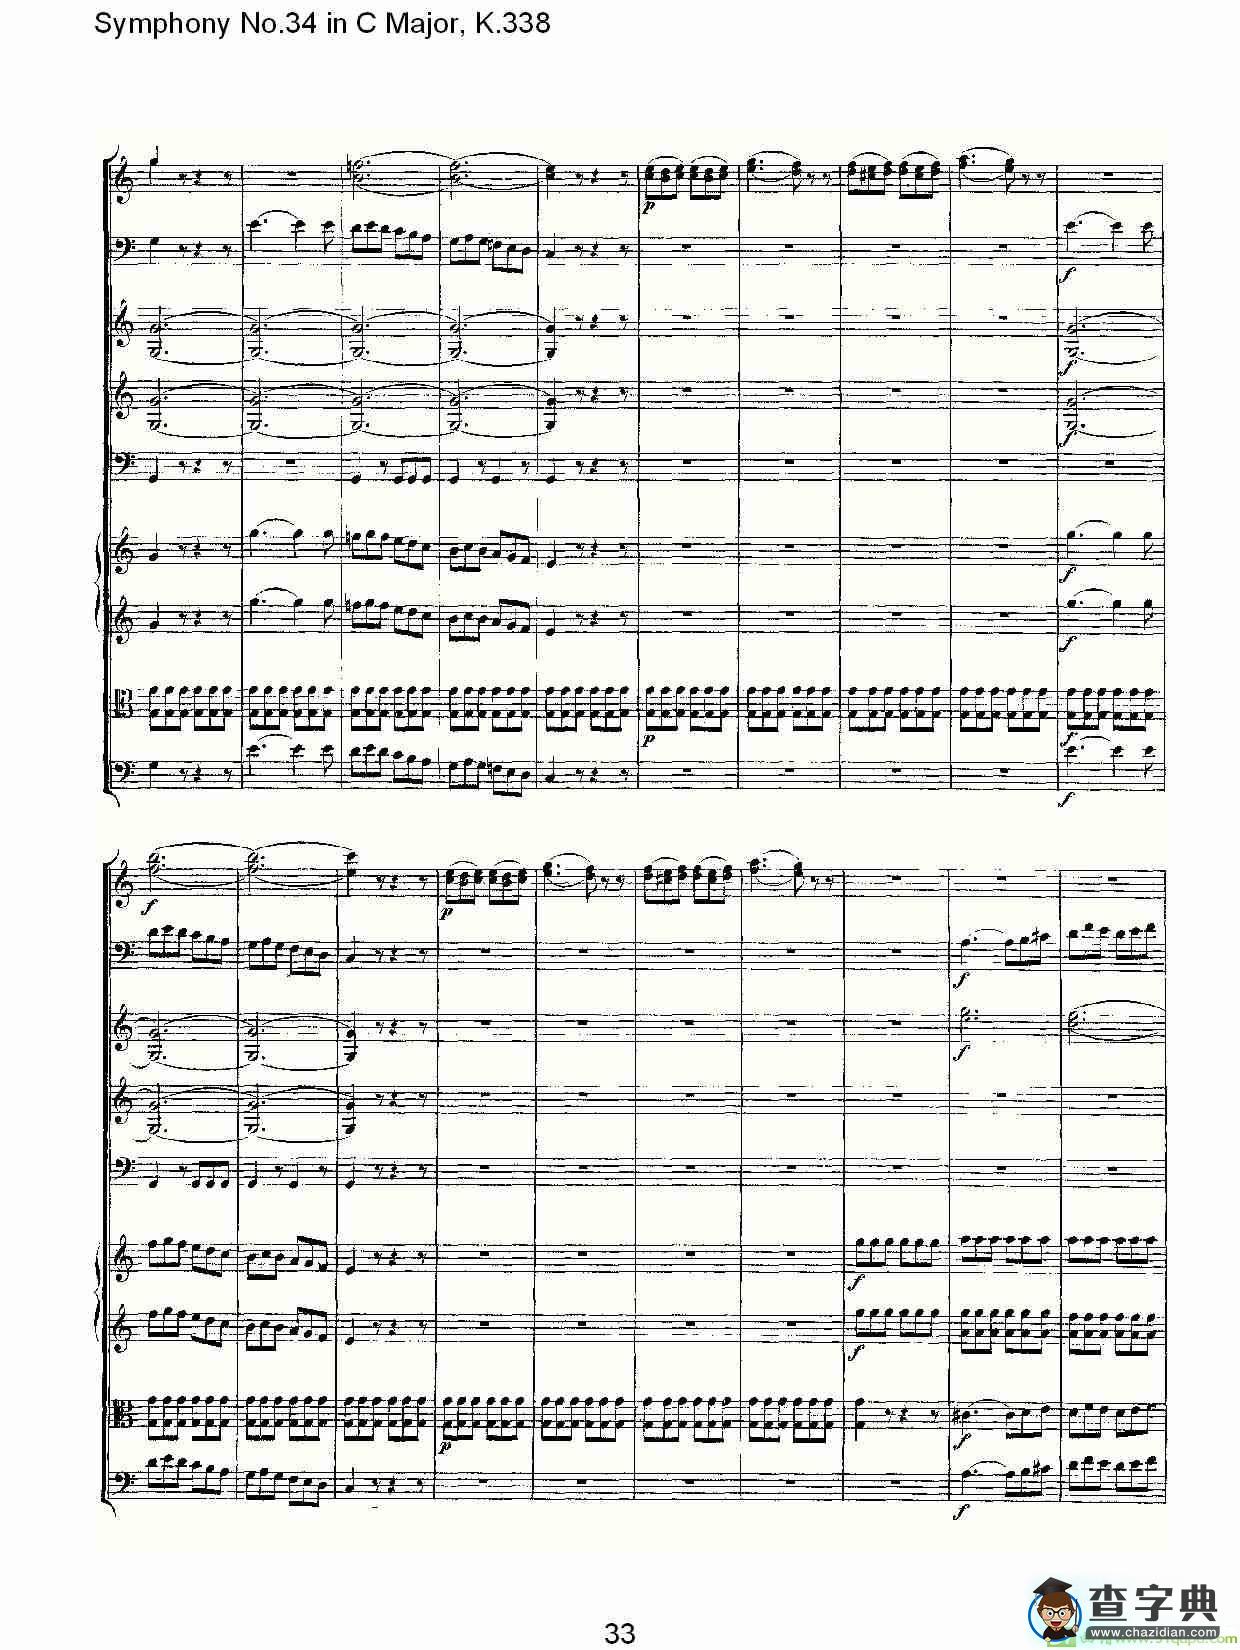 Symphony No.34 in C Major, K.338简谱